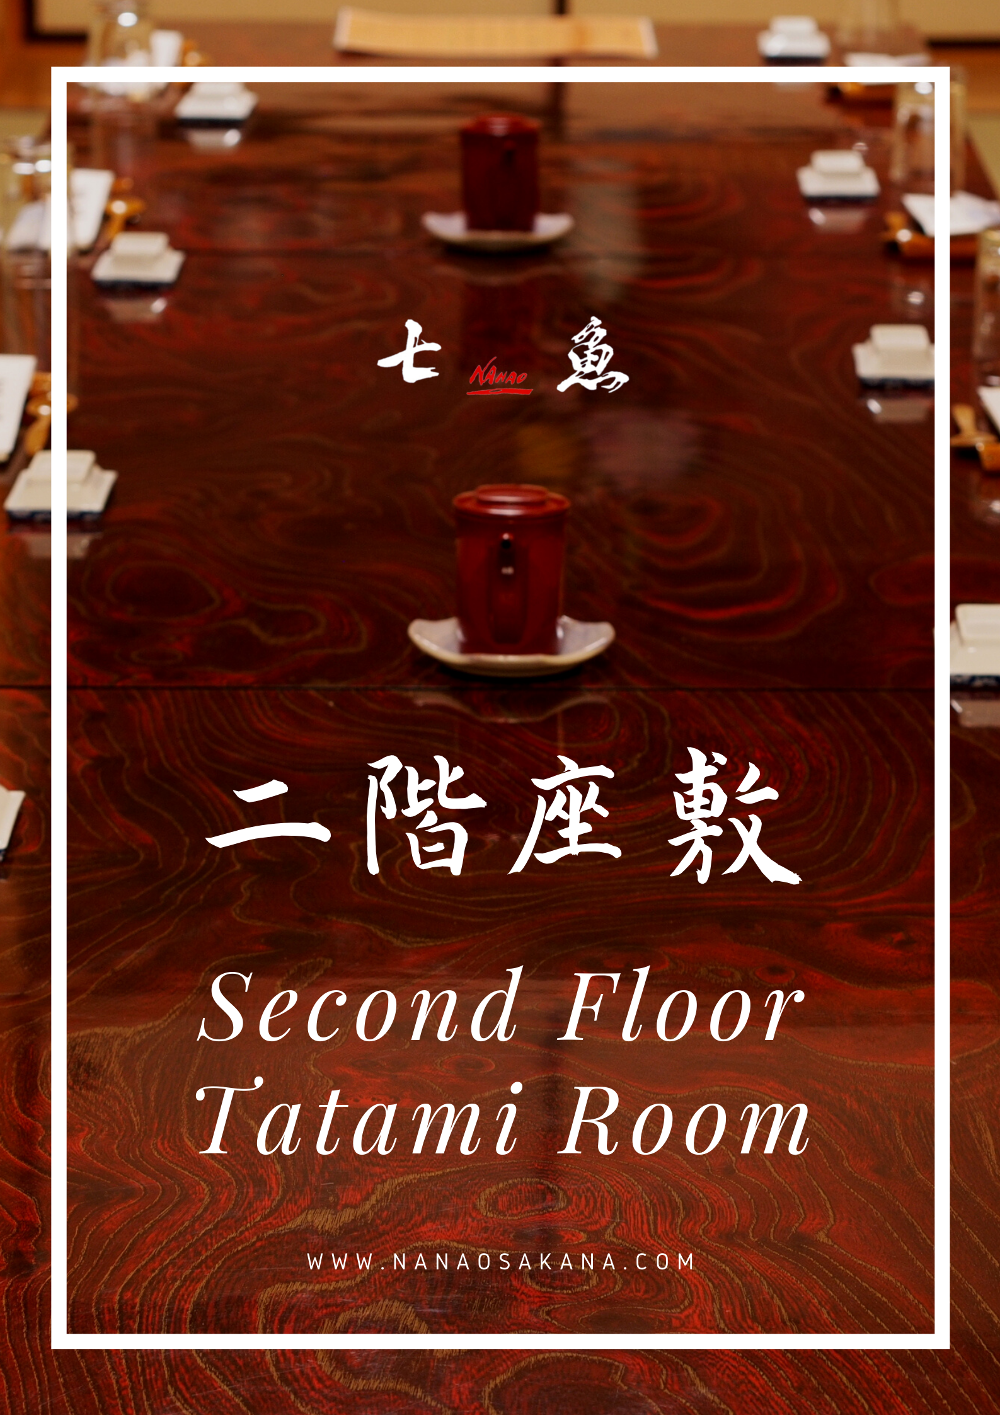 canva_Second Floor Tatami Room_gimp_1000px.png